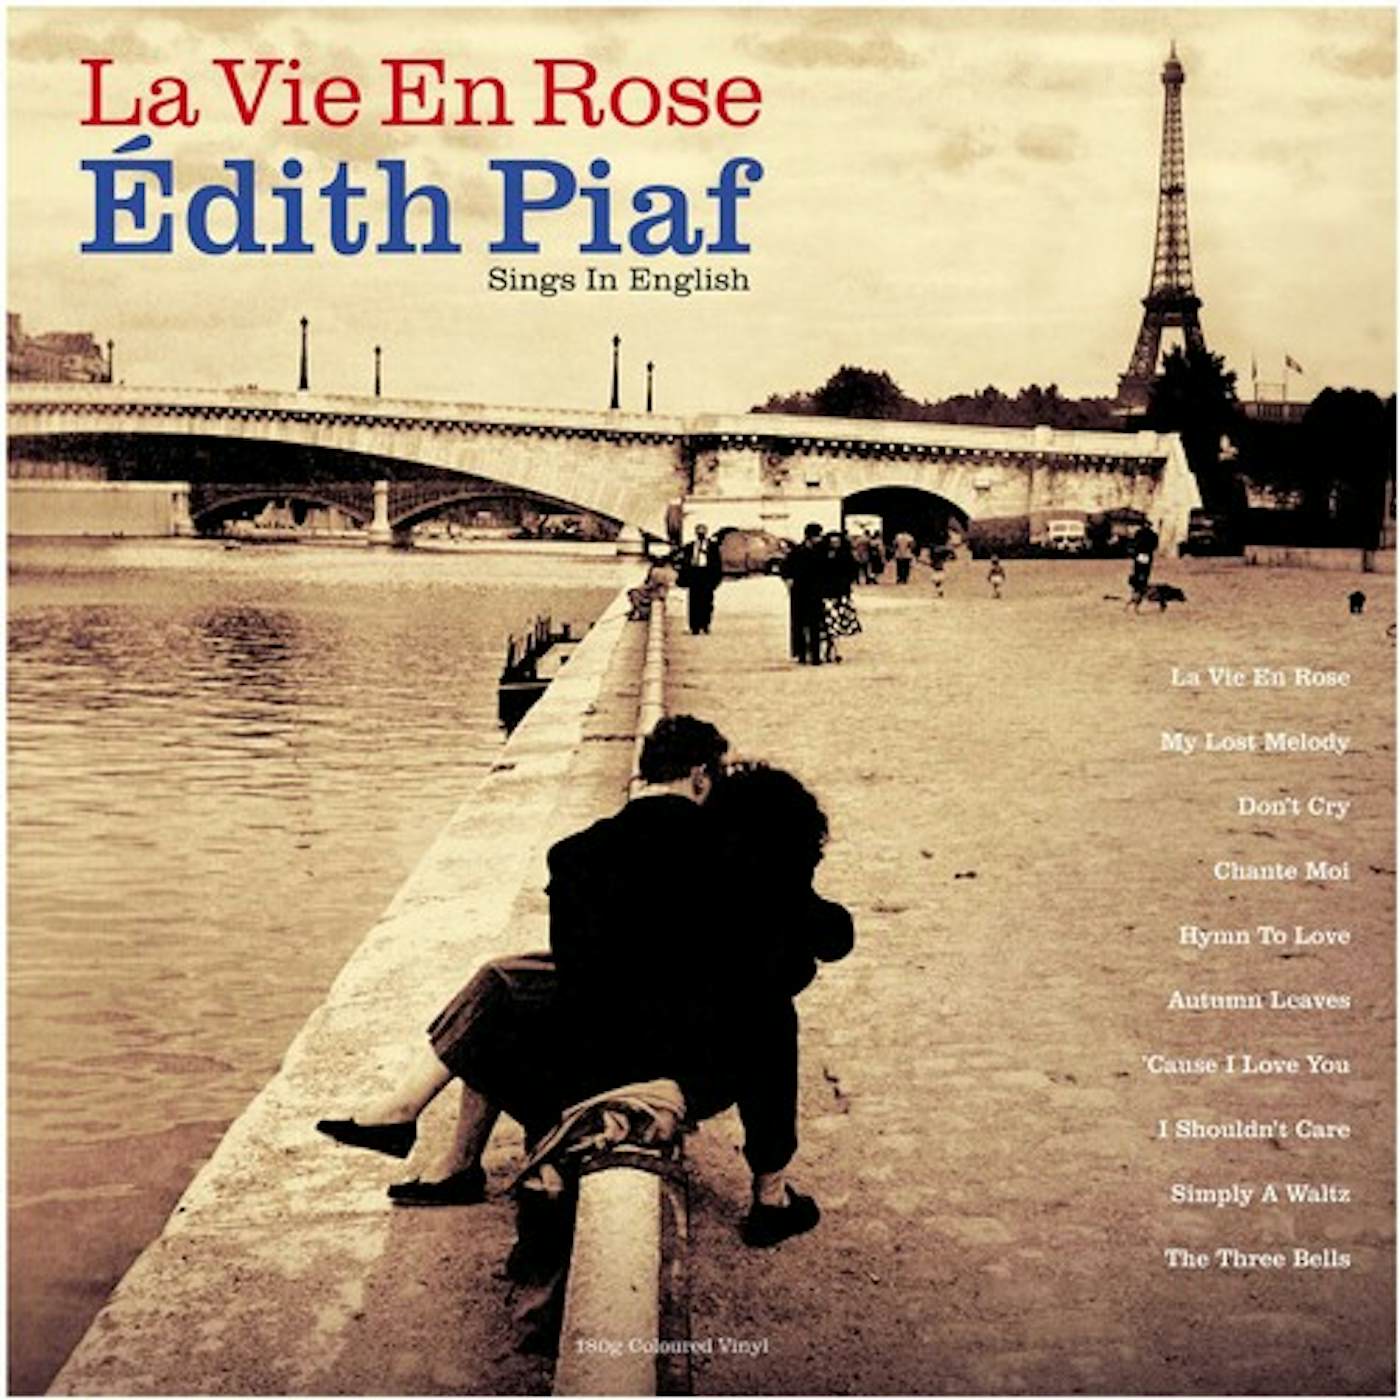 La Vie En Rose: Édith Piaf Sings In English Vinyl Record